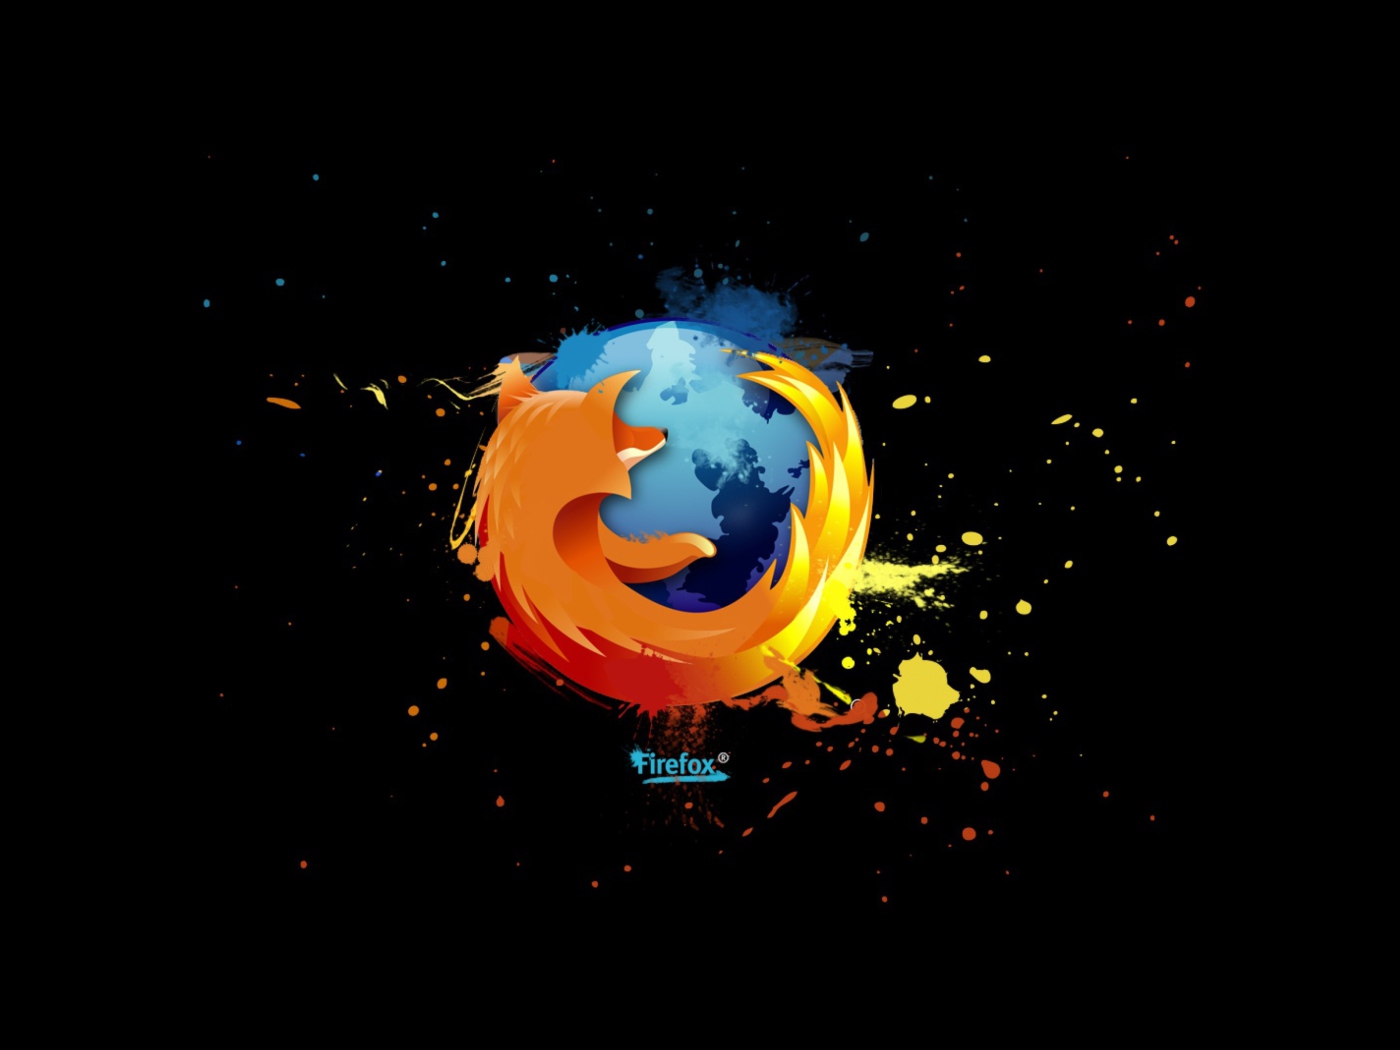 Обои Firefox Logo 1400x1050